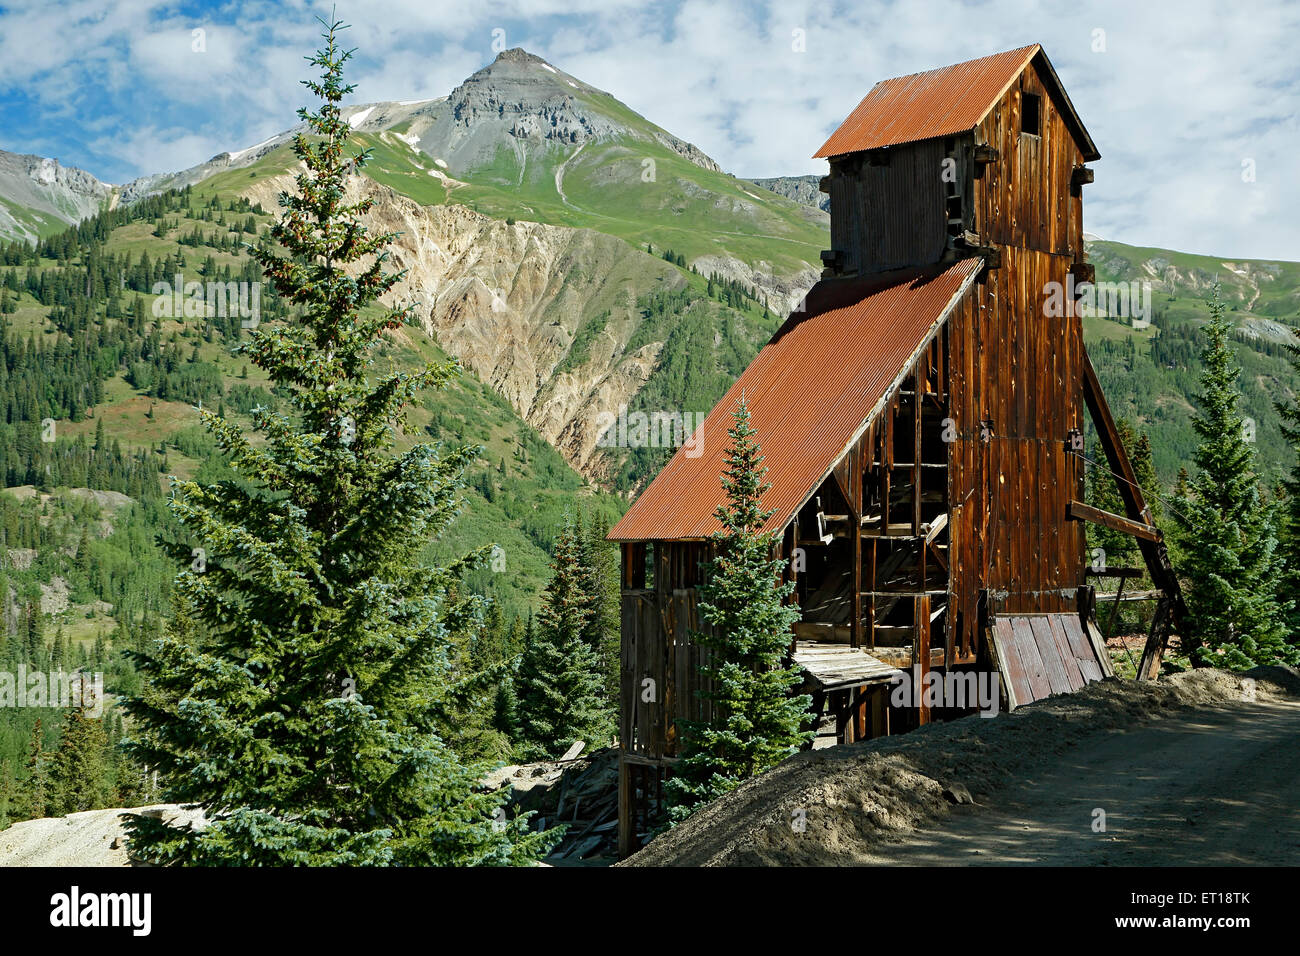 Maison de l'arbre et la montagne environnante, Yankee Girl, près de Ouray, Colorado USA Banque D'Images